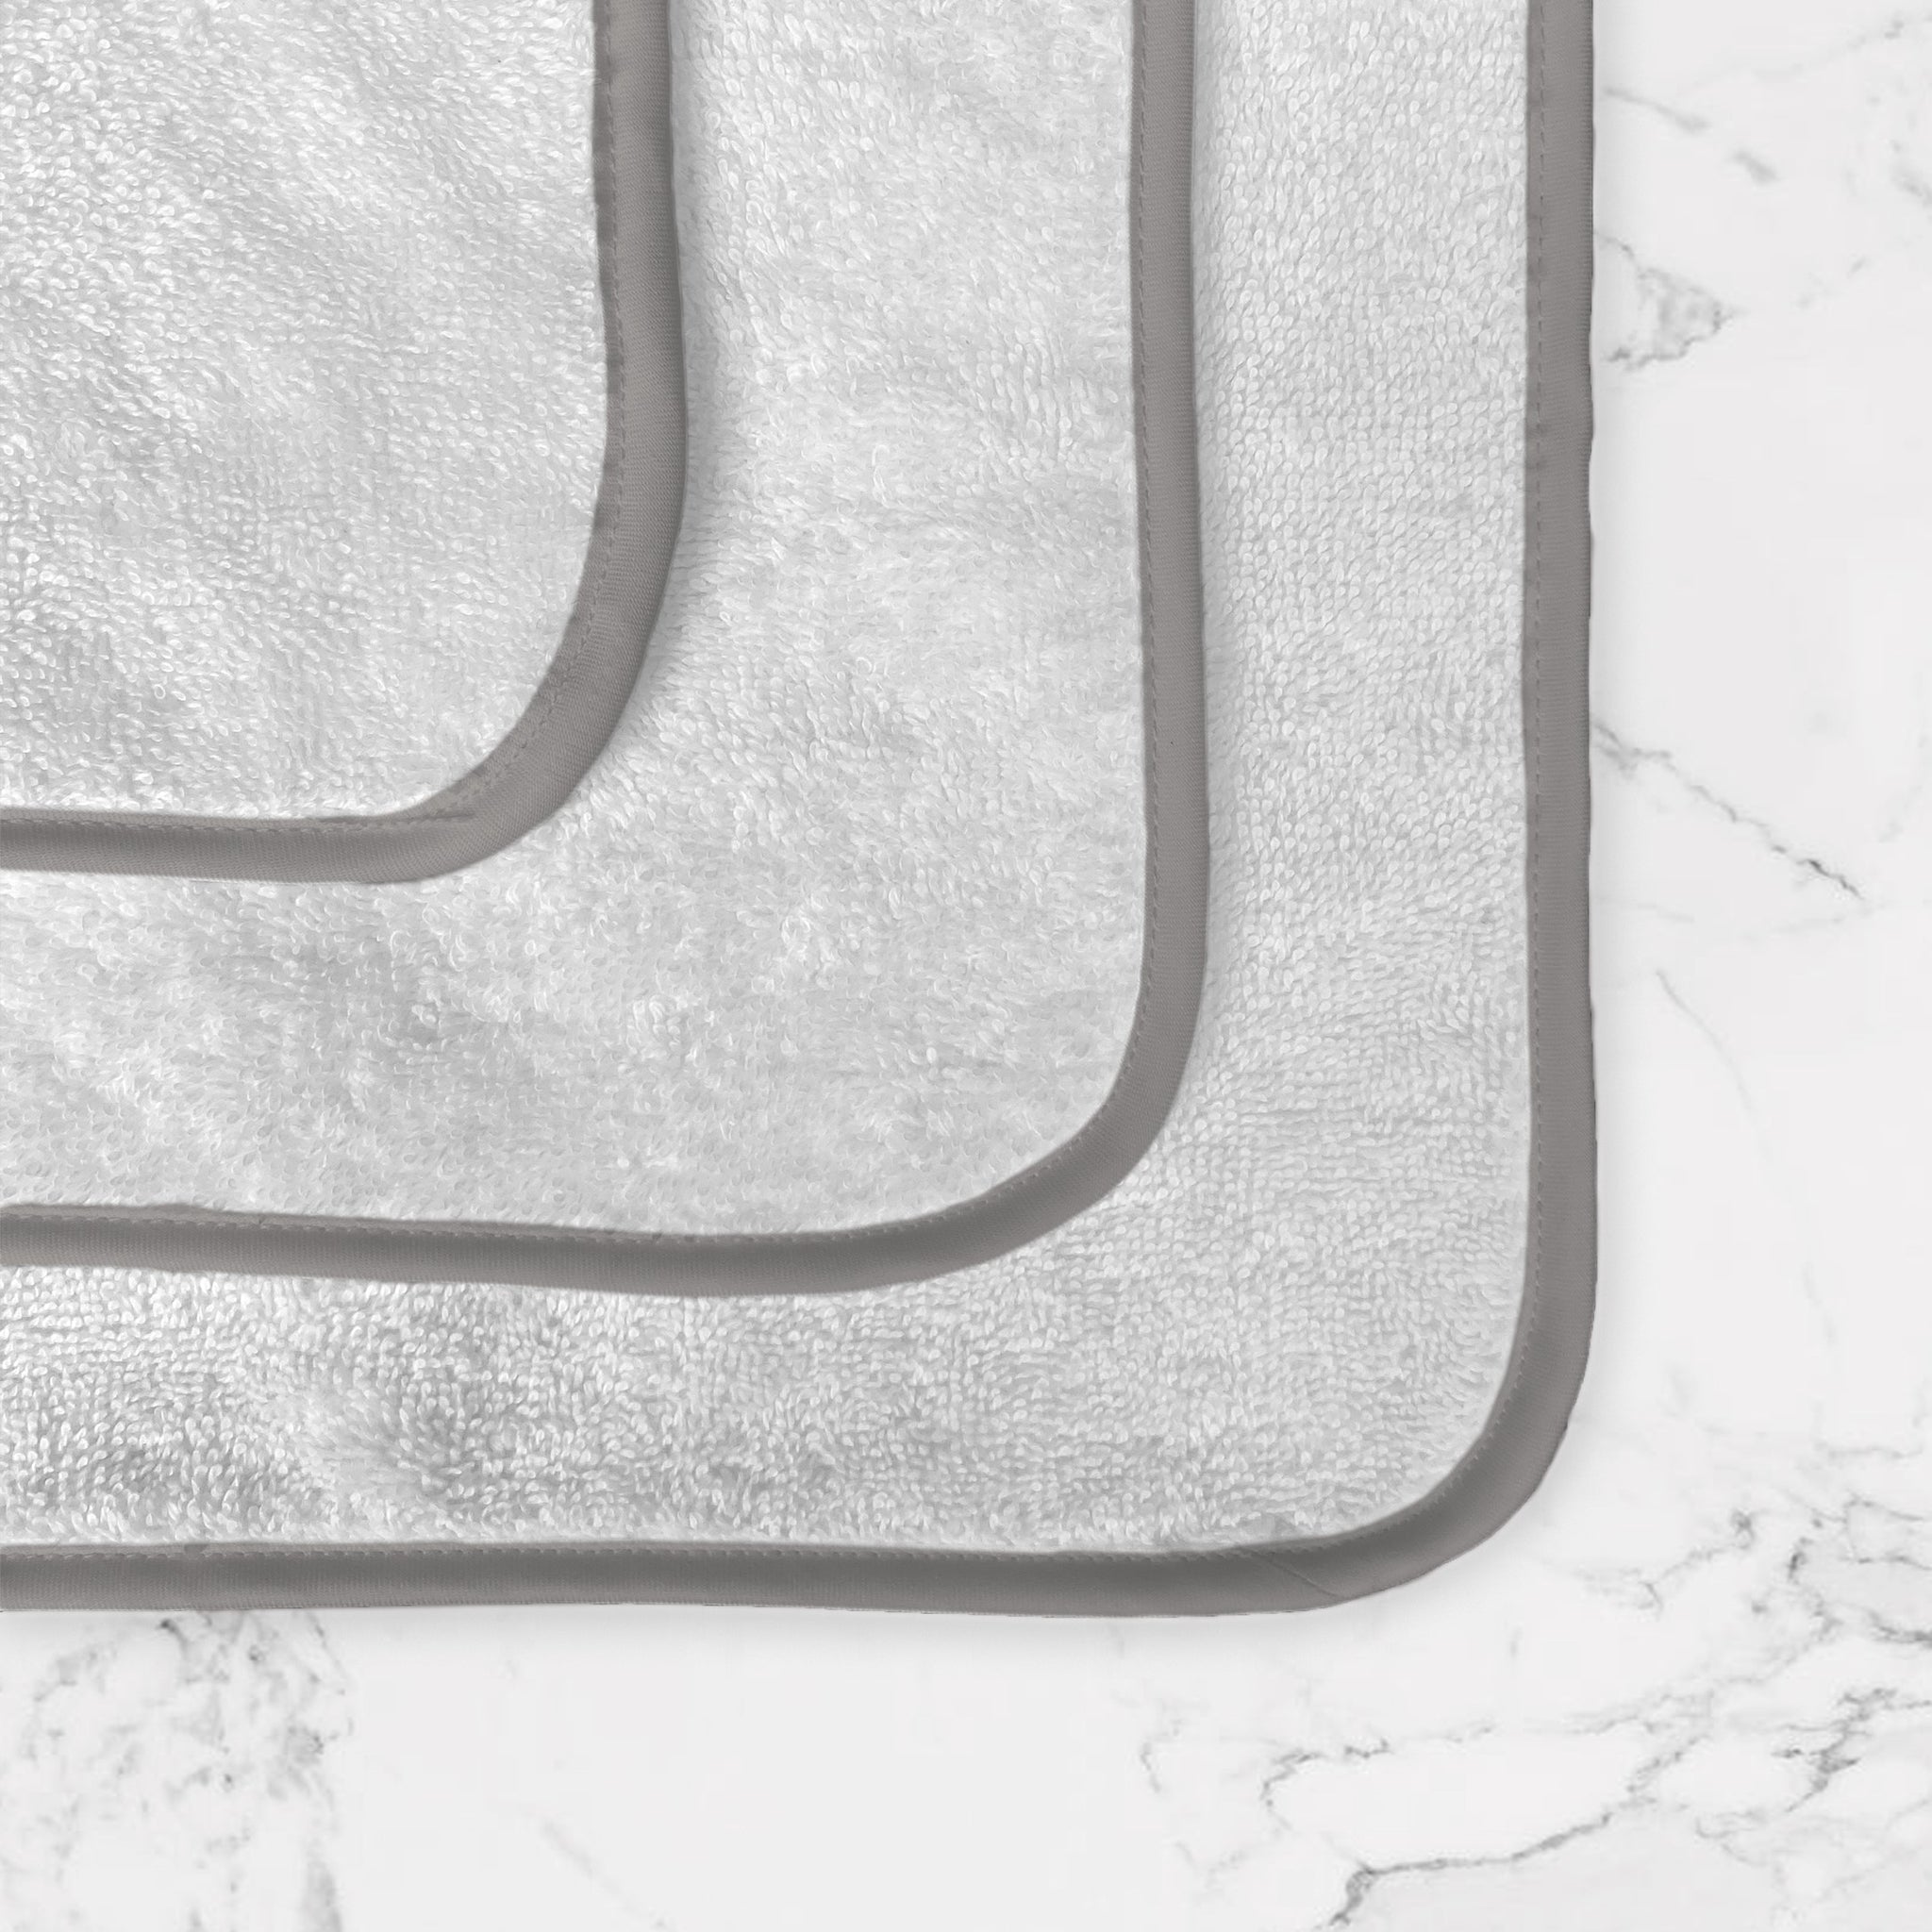 lavetta in puro cotone egiziano, bordo acciaio in 100% raso di puro cotone 300 fili e profilo interno in 100% raso di puro cotone 300 fili in contrasto colore acciaio, made in Italy. Scopri la nostra collezione completa di biancheria bagno.